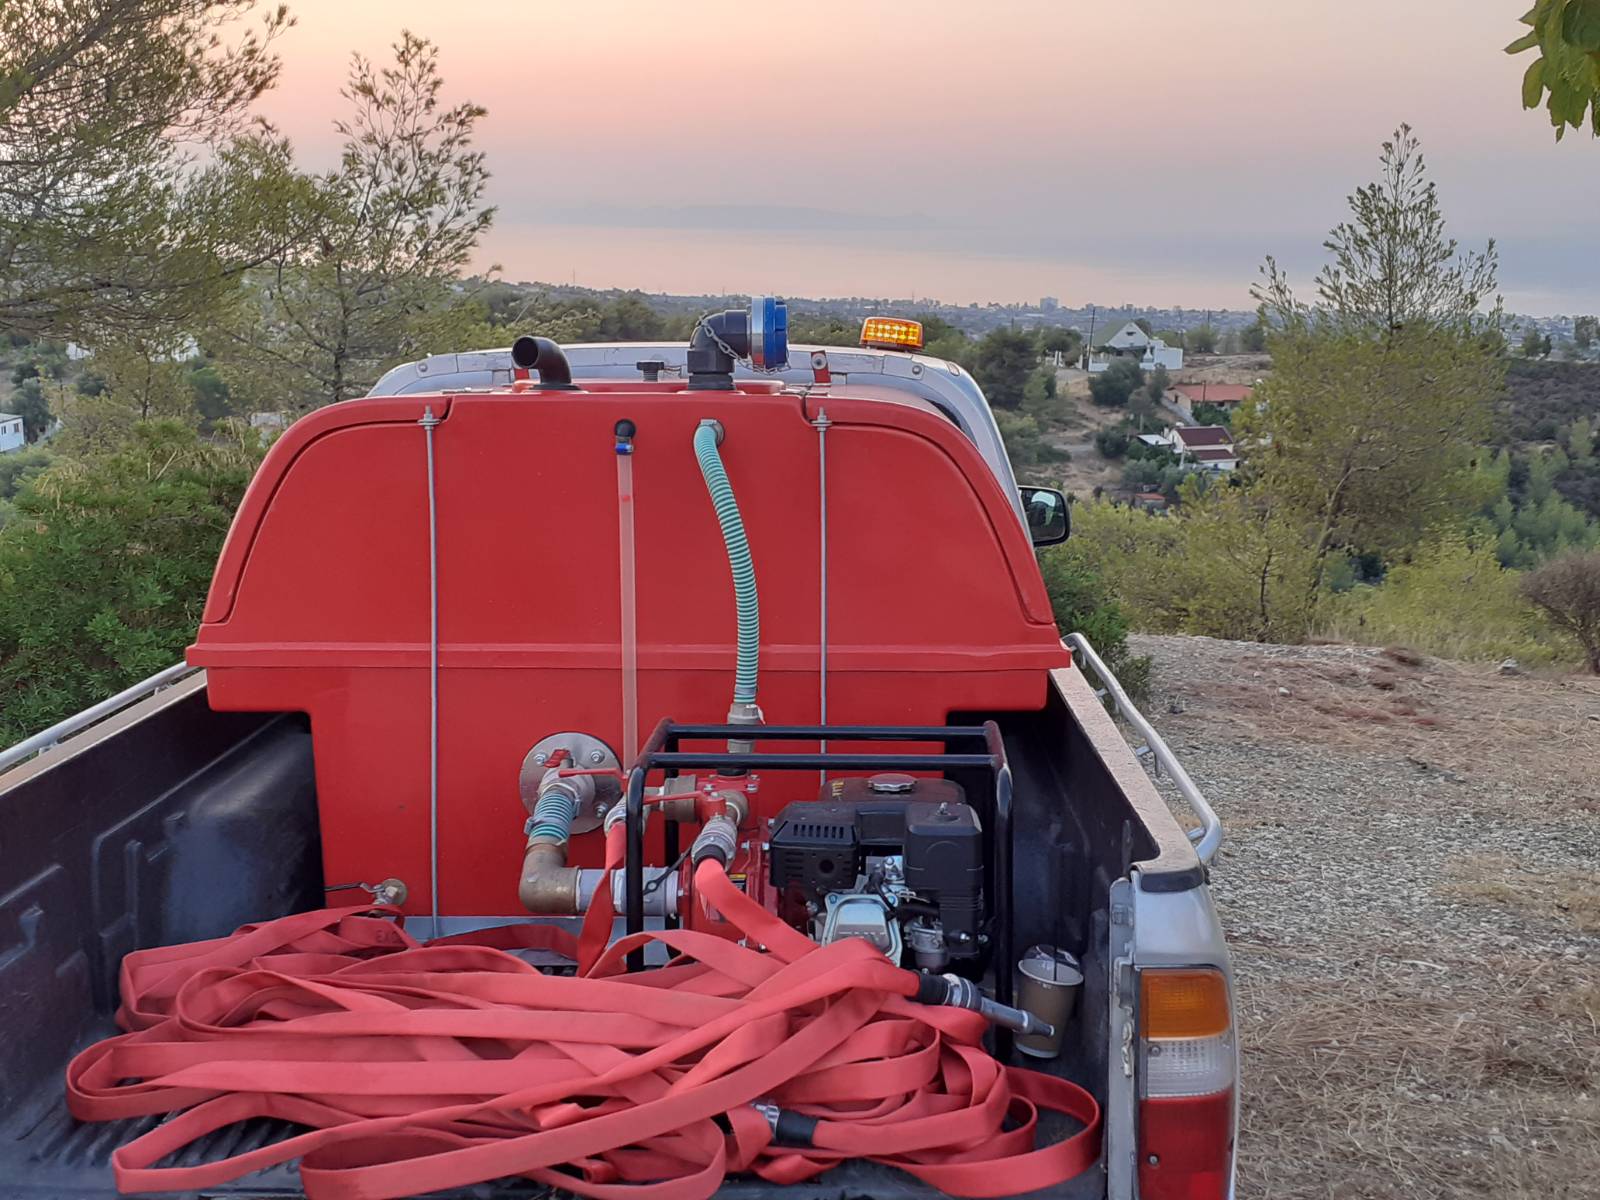 Περιπολία του πυροσβεστικού οχήματος του Ρουβίκωνα στα Γεράνεια